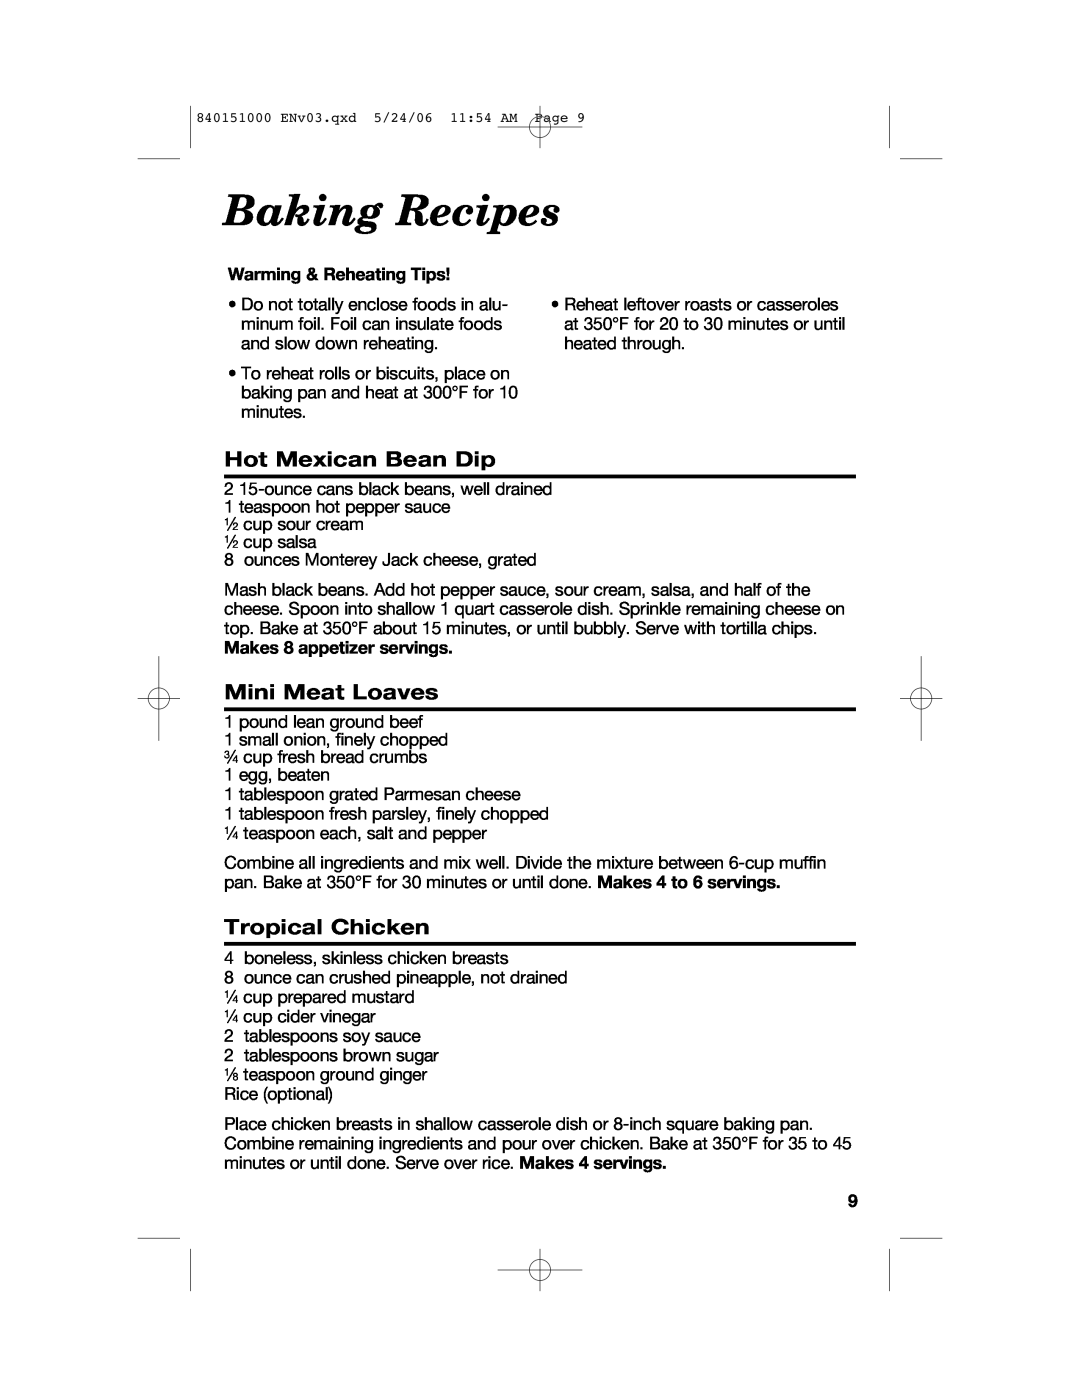 Hamilton Beach 840151000 manual Baking Recipes, Hot Mexican Bean Dip, Mini Meat Loaves, Tropical Chicken 